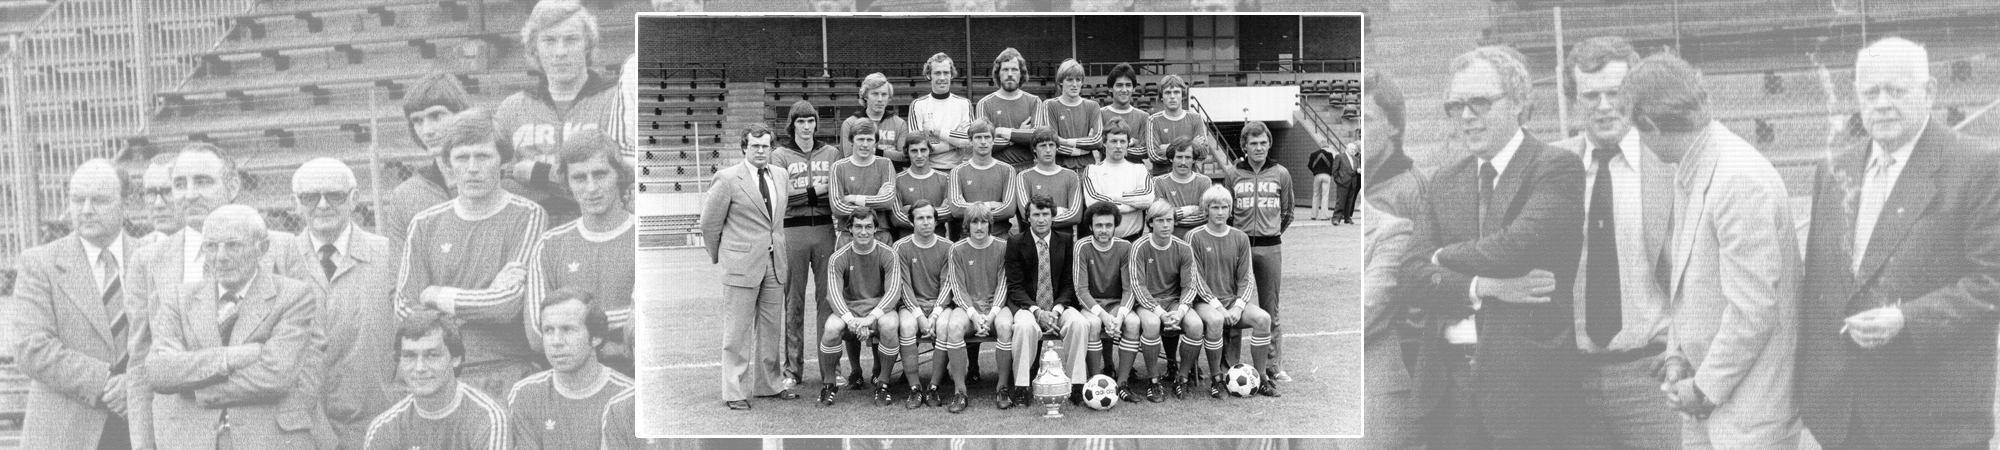 FC Twente seizoen 1976/1977